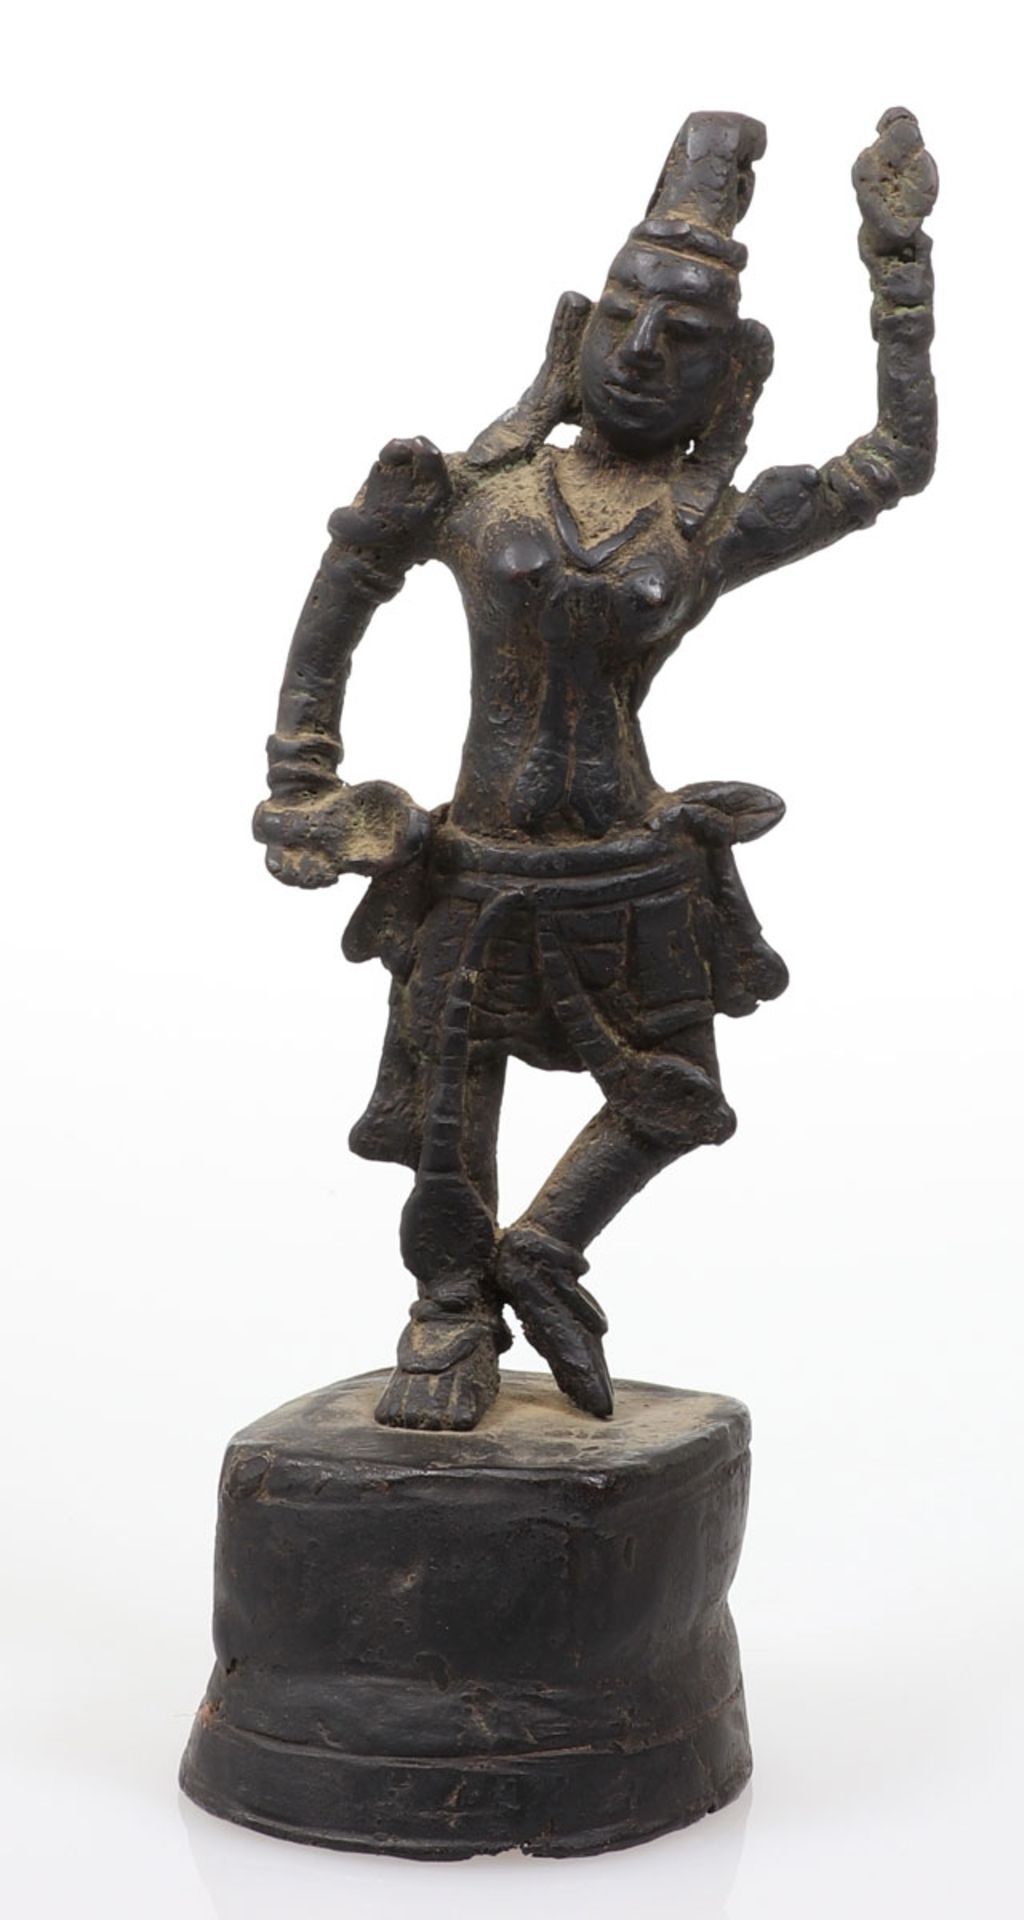 TempelfigurThailand, 19. Jahrhundert. Bronze. H. 27,5 cm. Tanzende weibliche Figur.- - -22.00 %